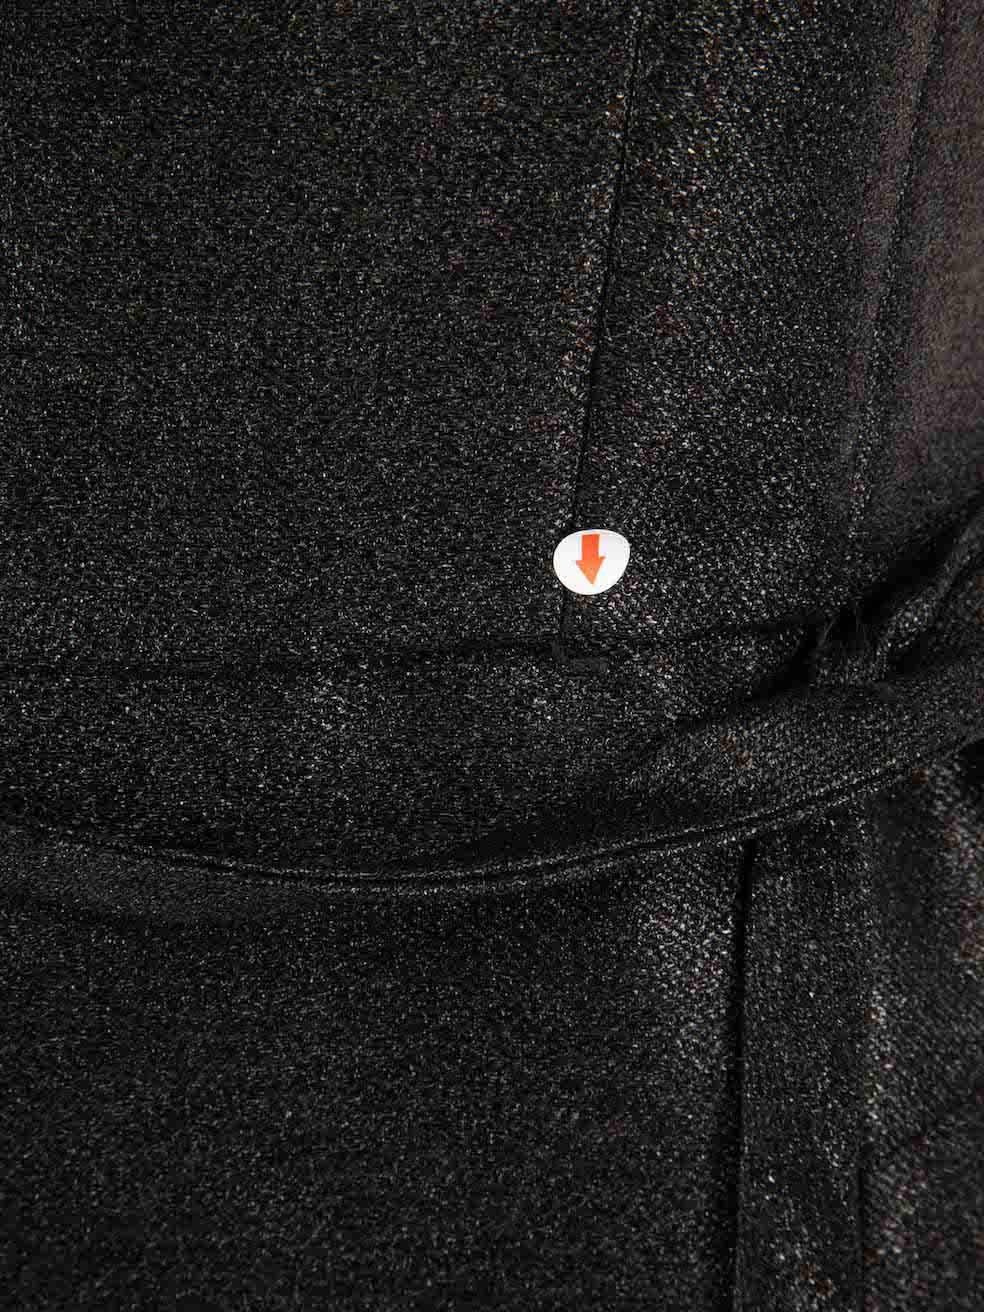 Marc Jacobs - Robe ceinturée noire à paillettes, taille L Pour femmes en vente